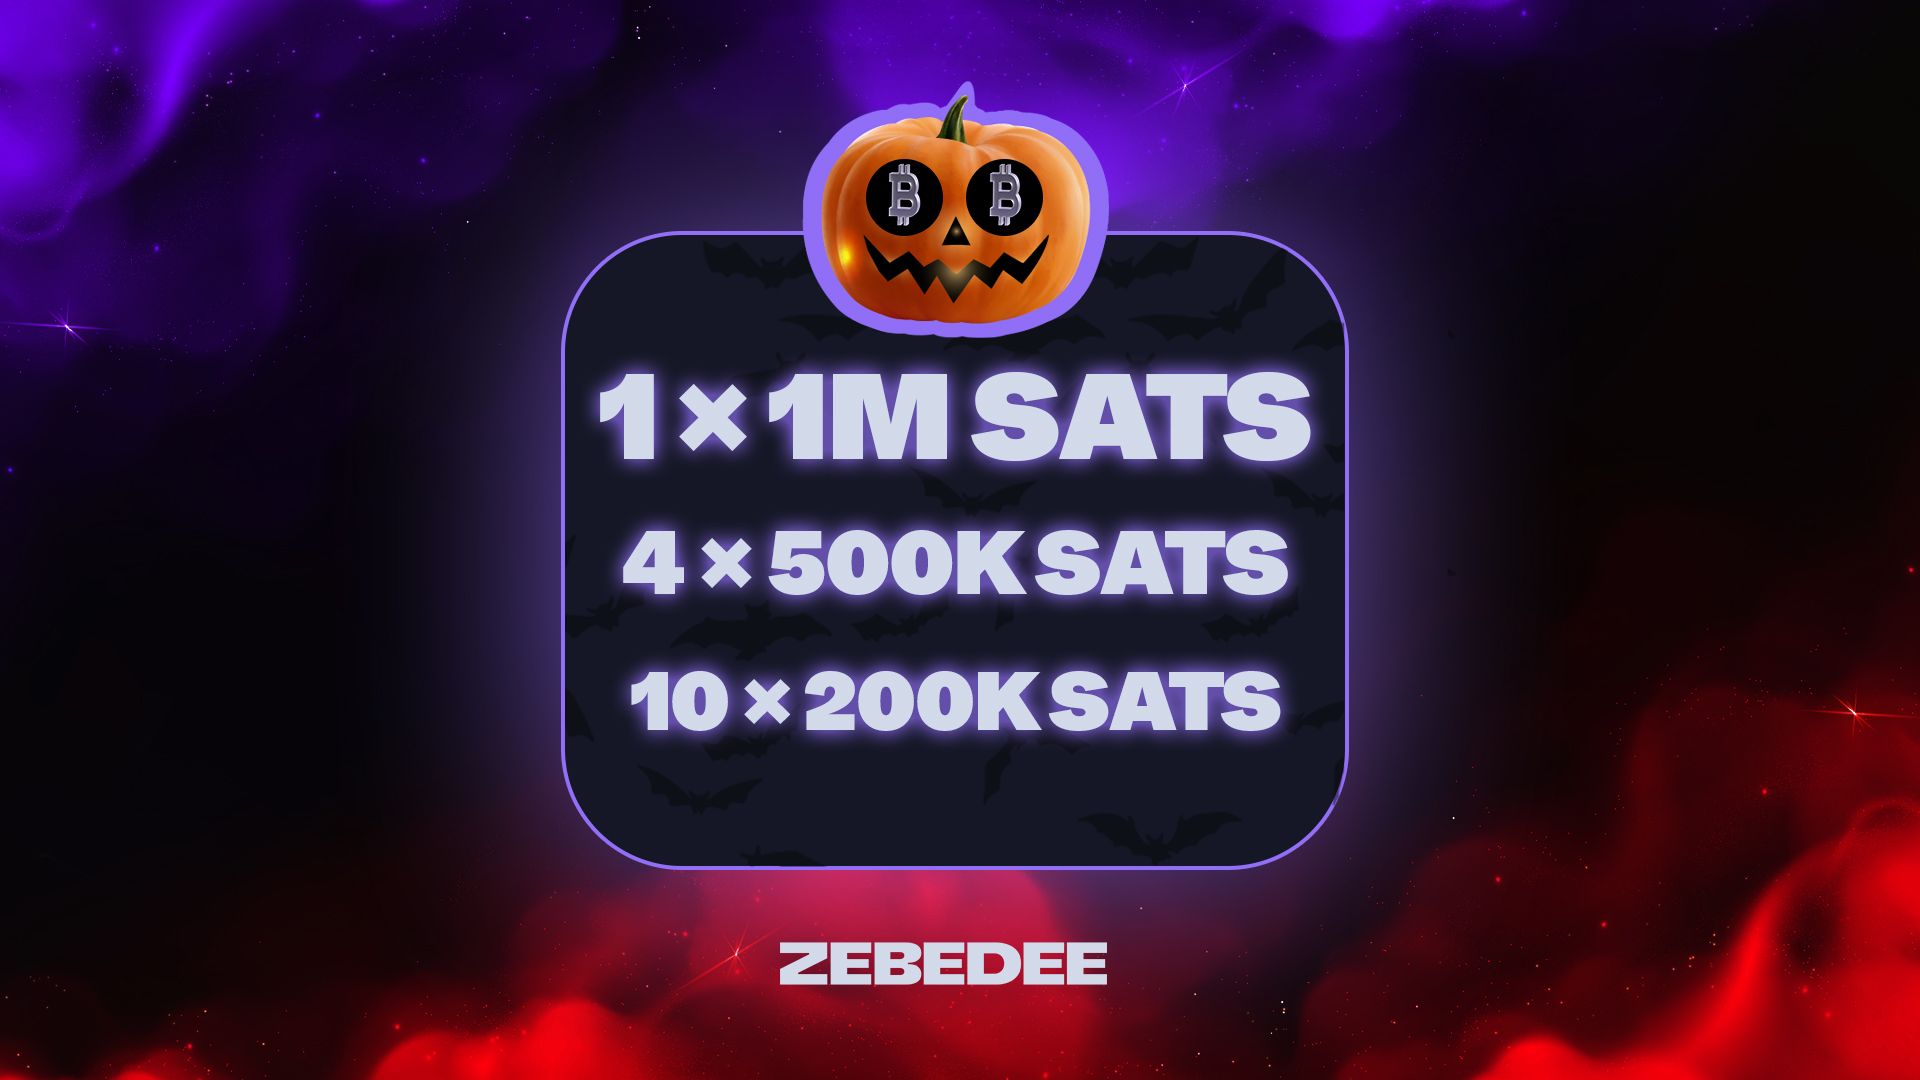 ZEBEDEE Happy Halloween Haunt – 5 million sats in prizes.